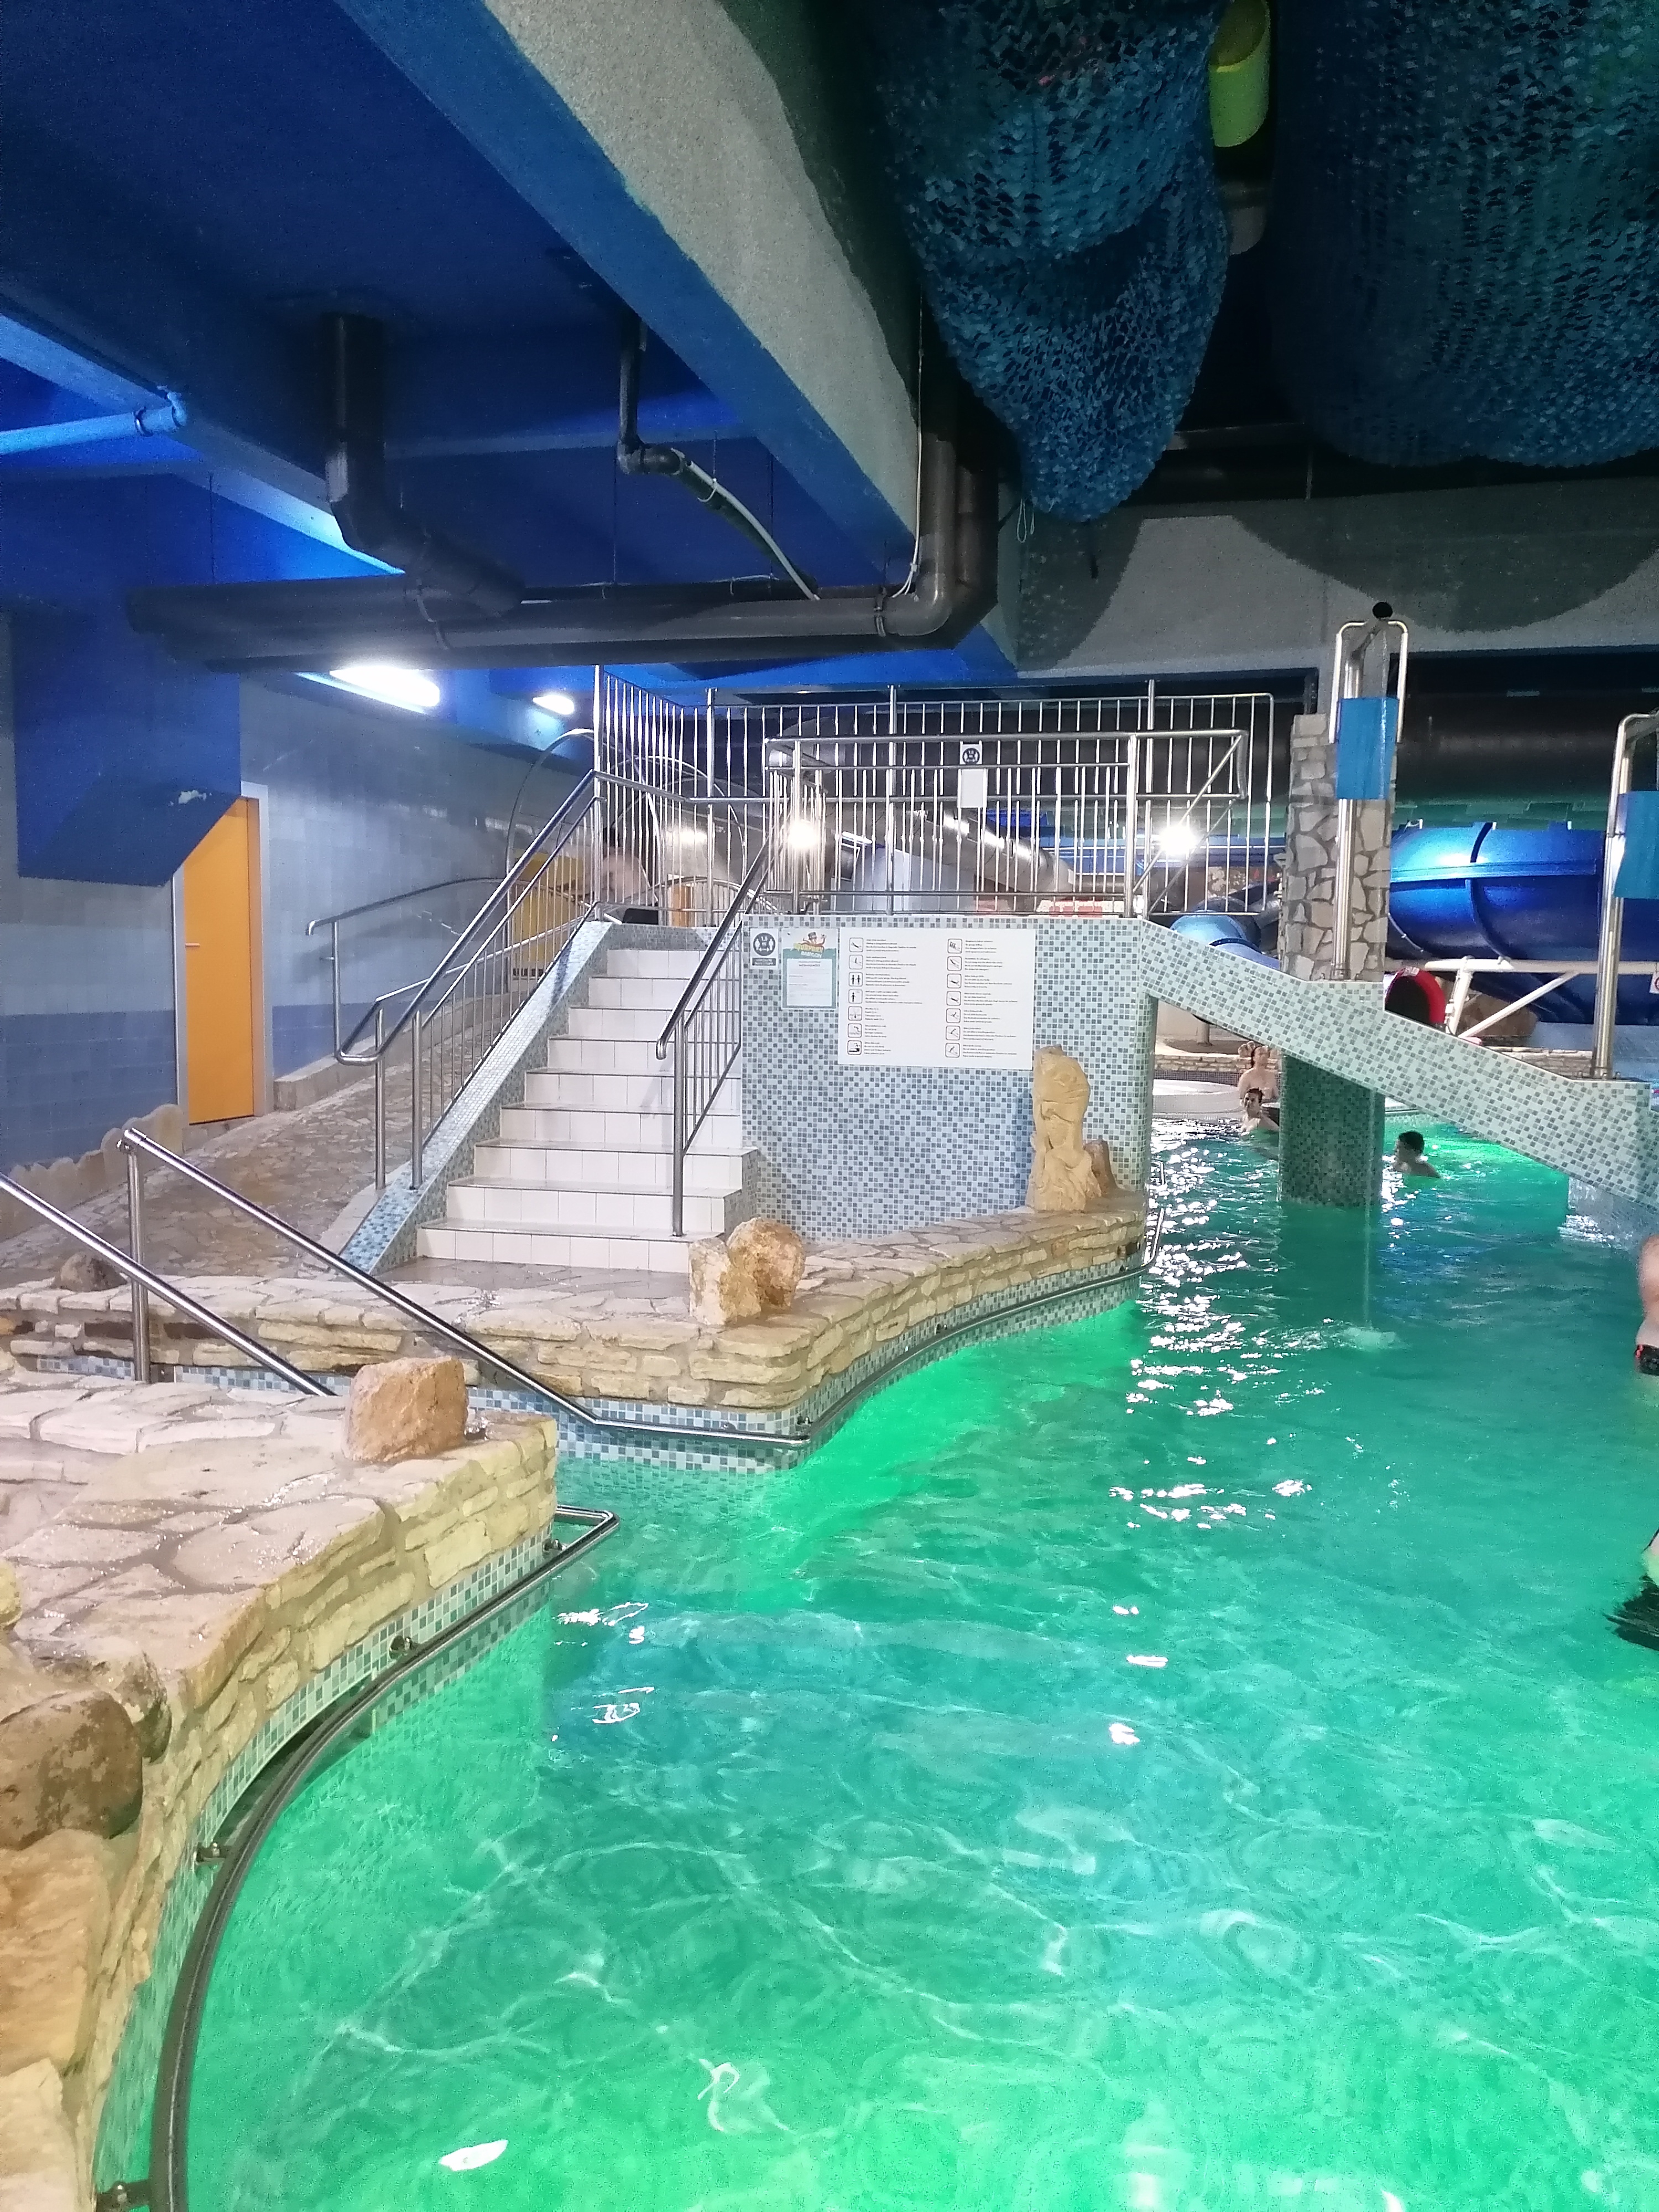 Aquapark Babylon